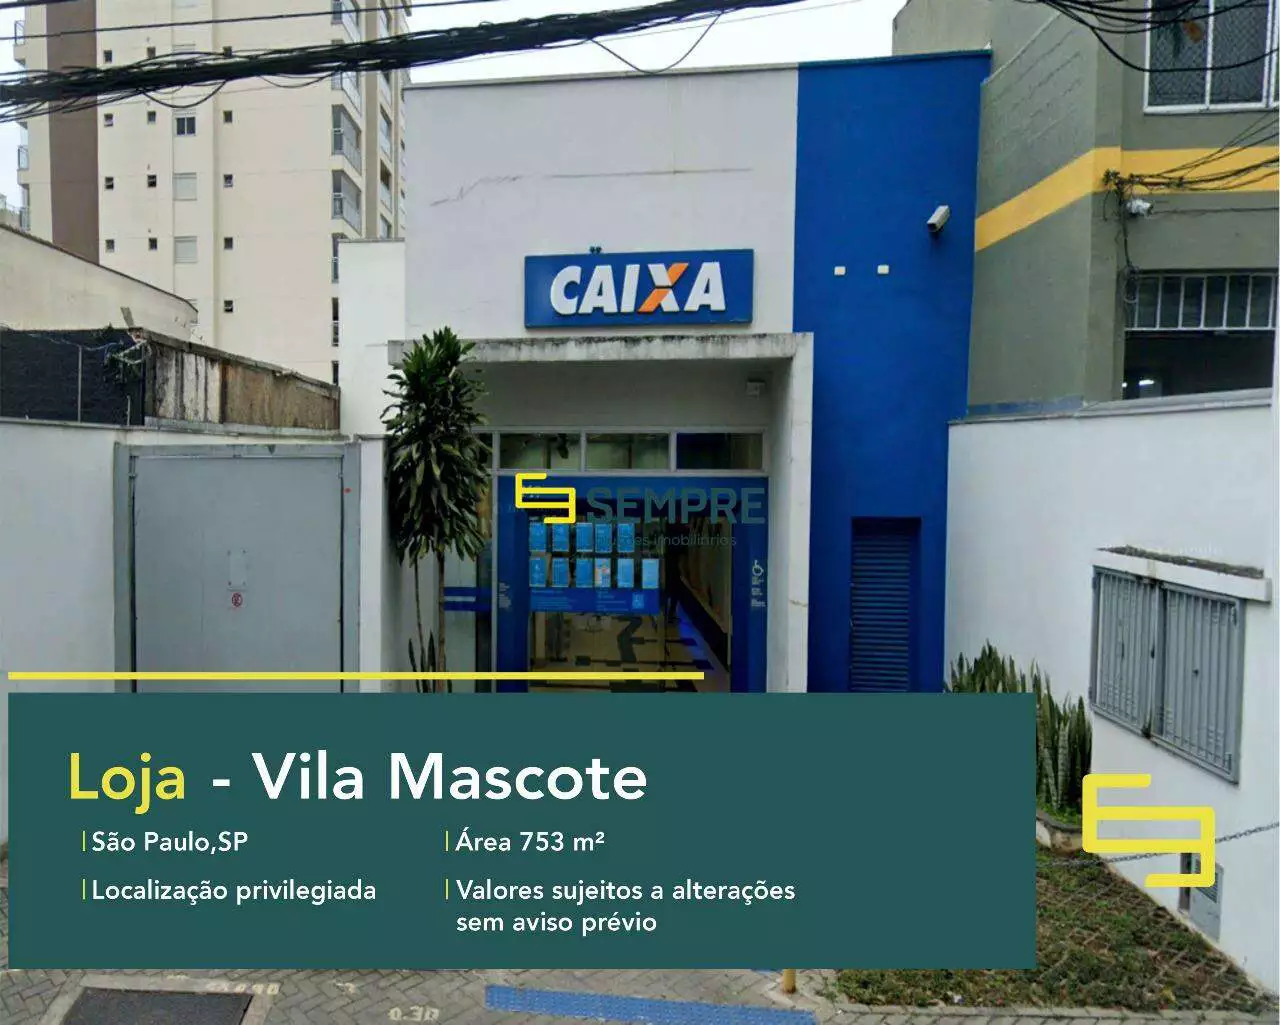 Loja na Vila Mascote para locação em São Paulo, excelente localização. O estabelecimento comercial conta com área de 753,36 m².